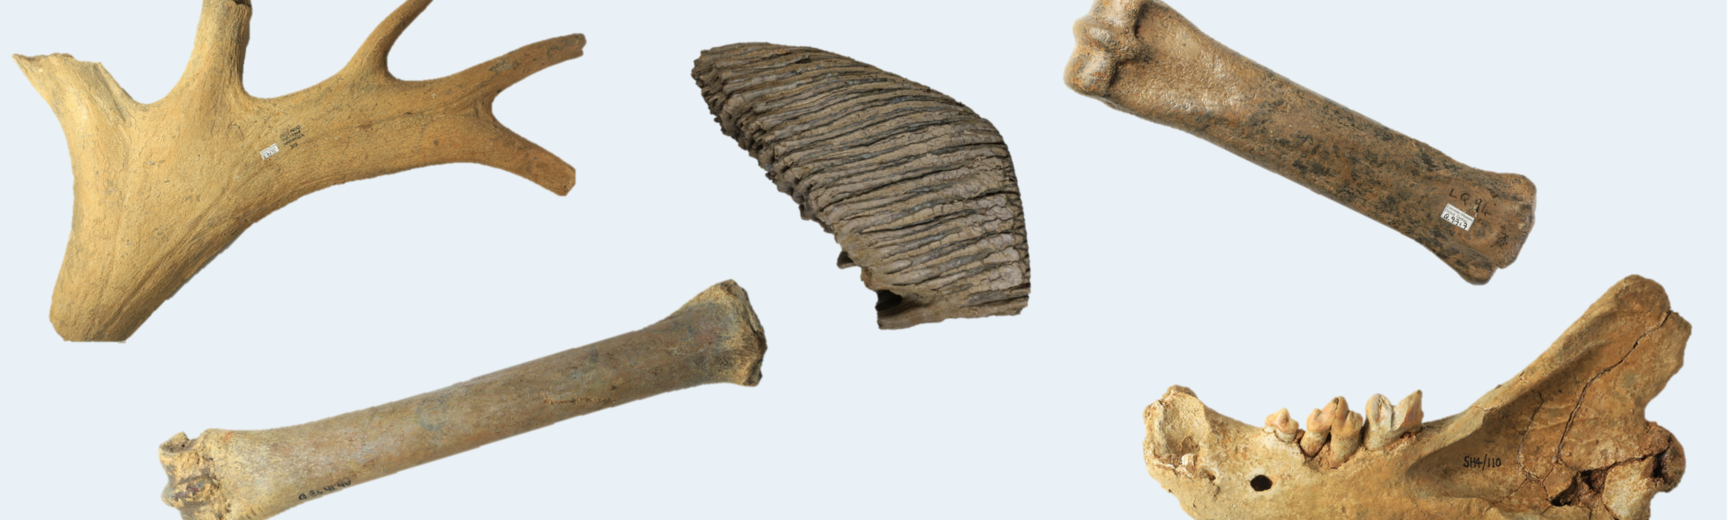 Fossils from the Pleistocene era